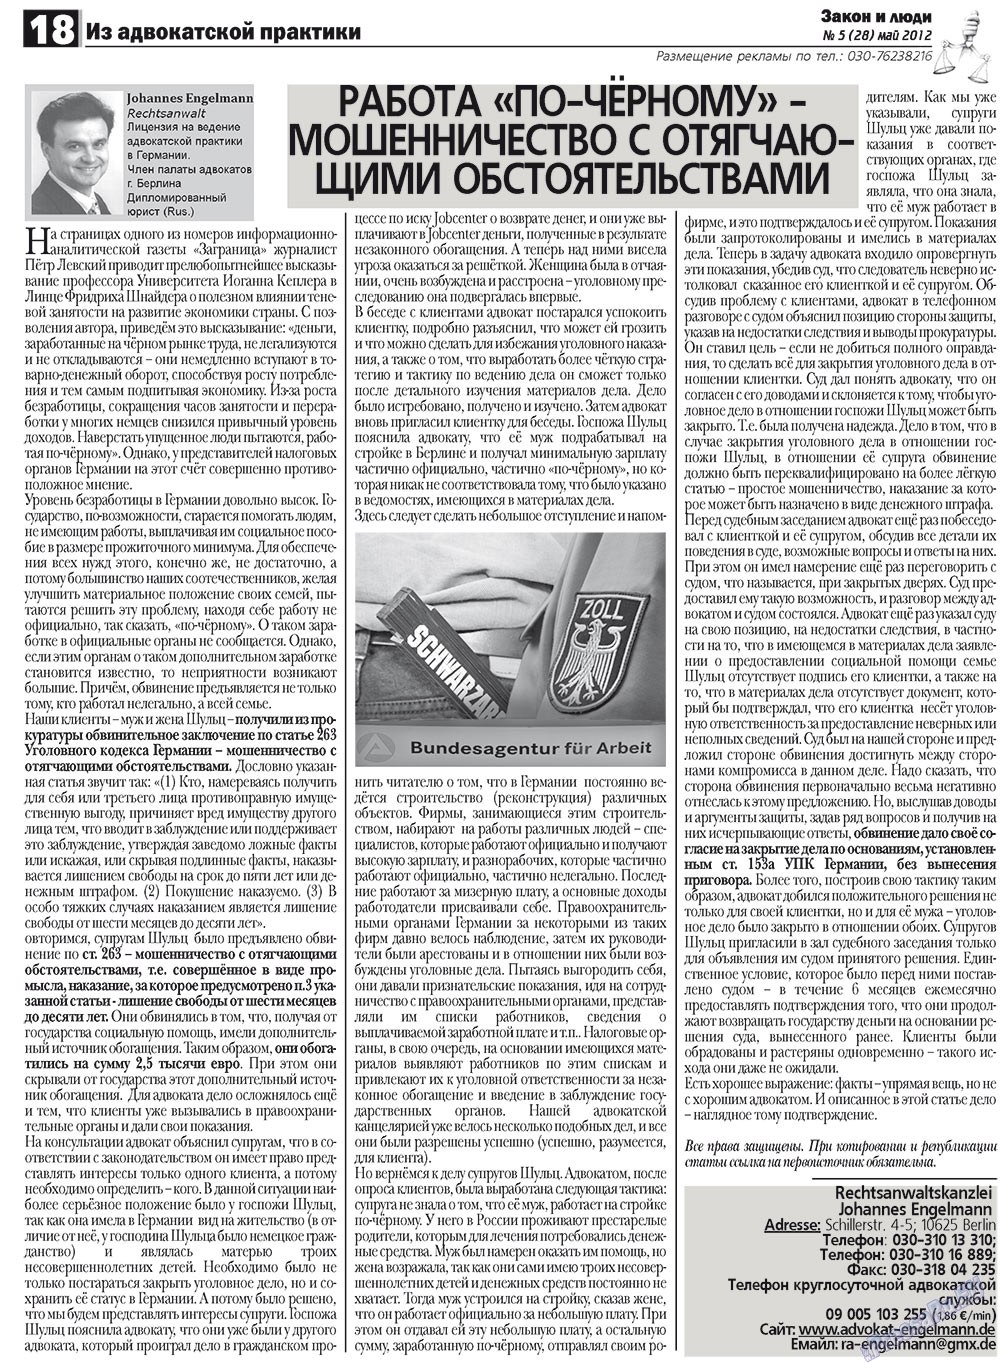 Закон и люди, газета. 2012 №5 стр.18